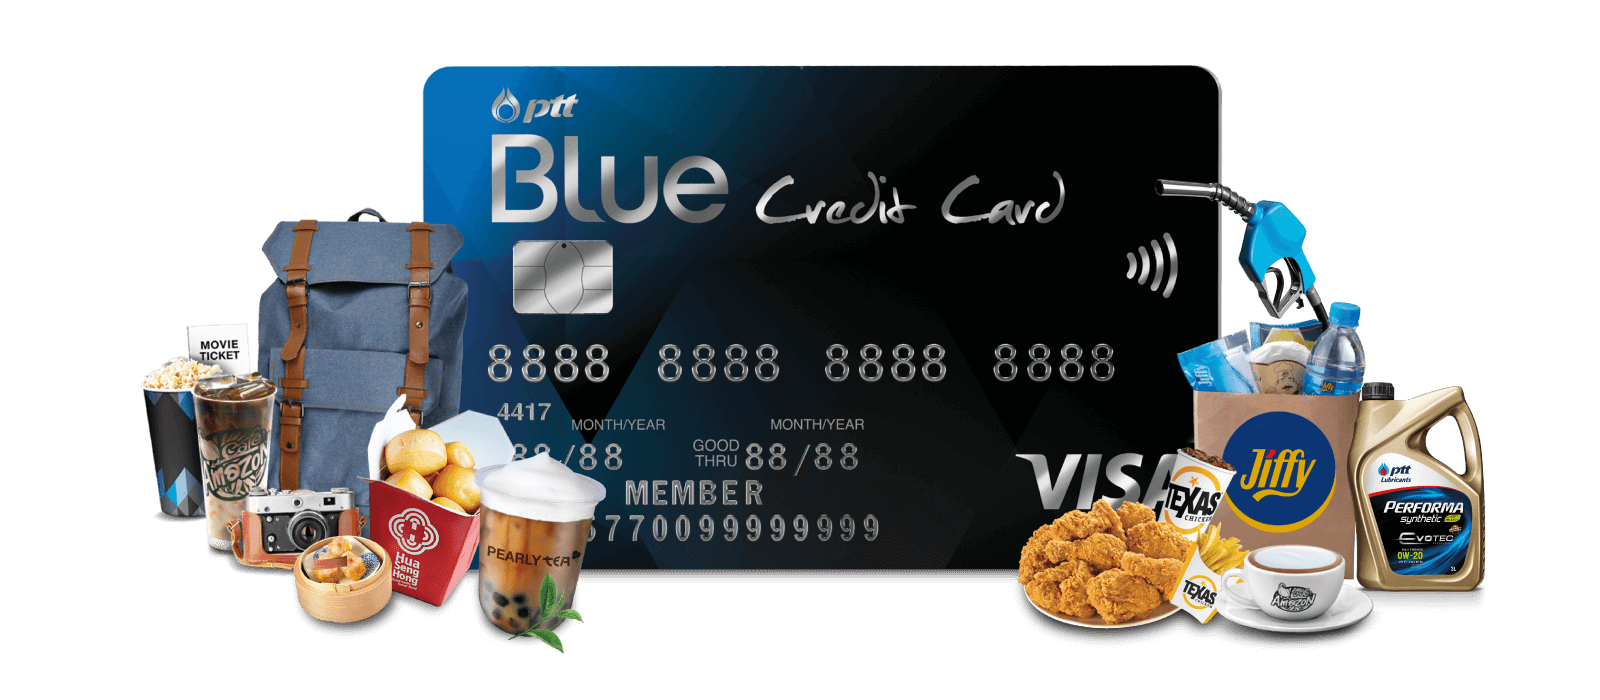 บัตรเครดิต กสิกร แบบไหนดี 2022 : บัตรเครดิต กสิกร PTT Blue Credit Card